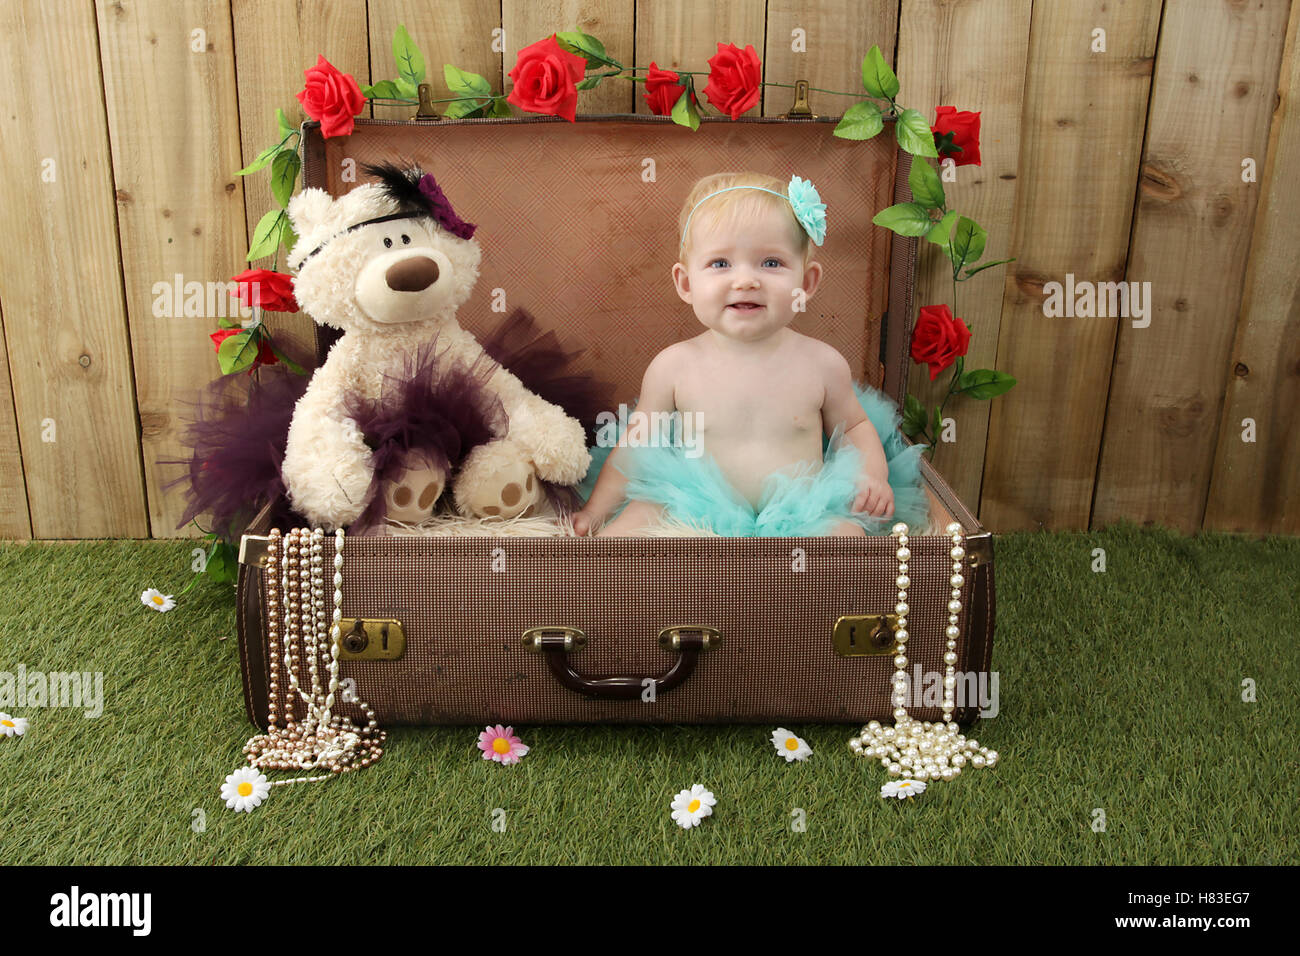 Baby ragazza seduta in una valigia in giardino con erba e fiori Foto Stock